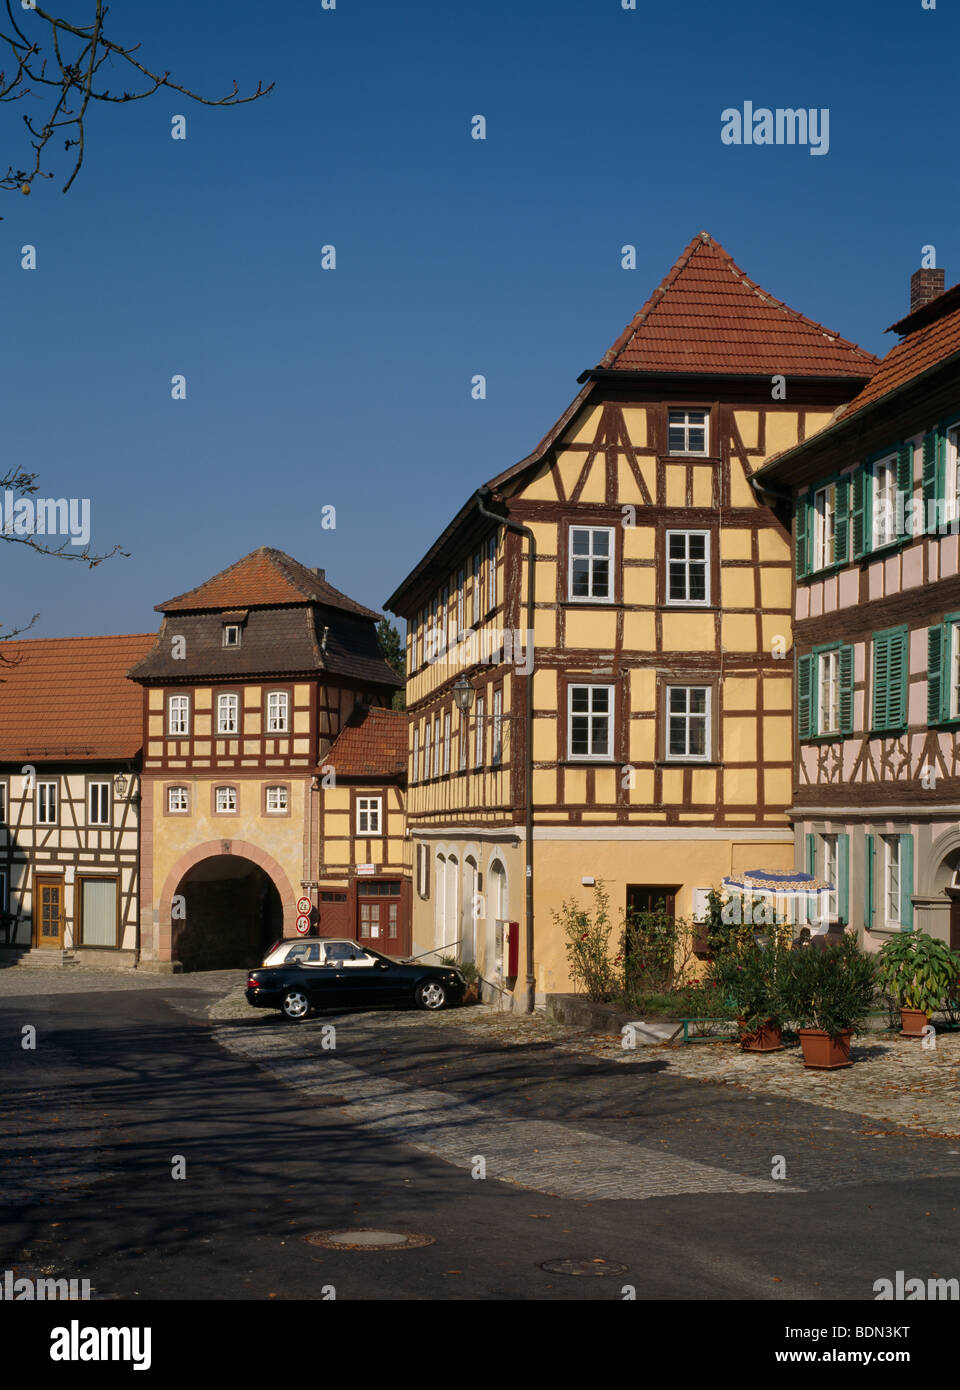 Königsberg in Bayern, Das Unfinder Tor, Stadtseite Stock Photo